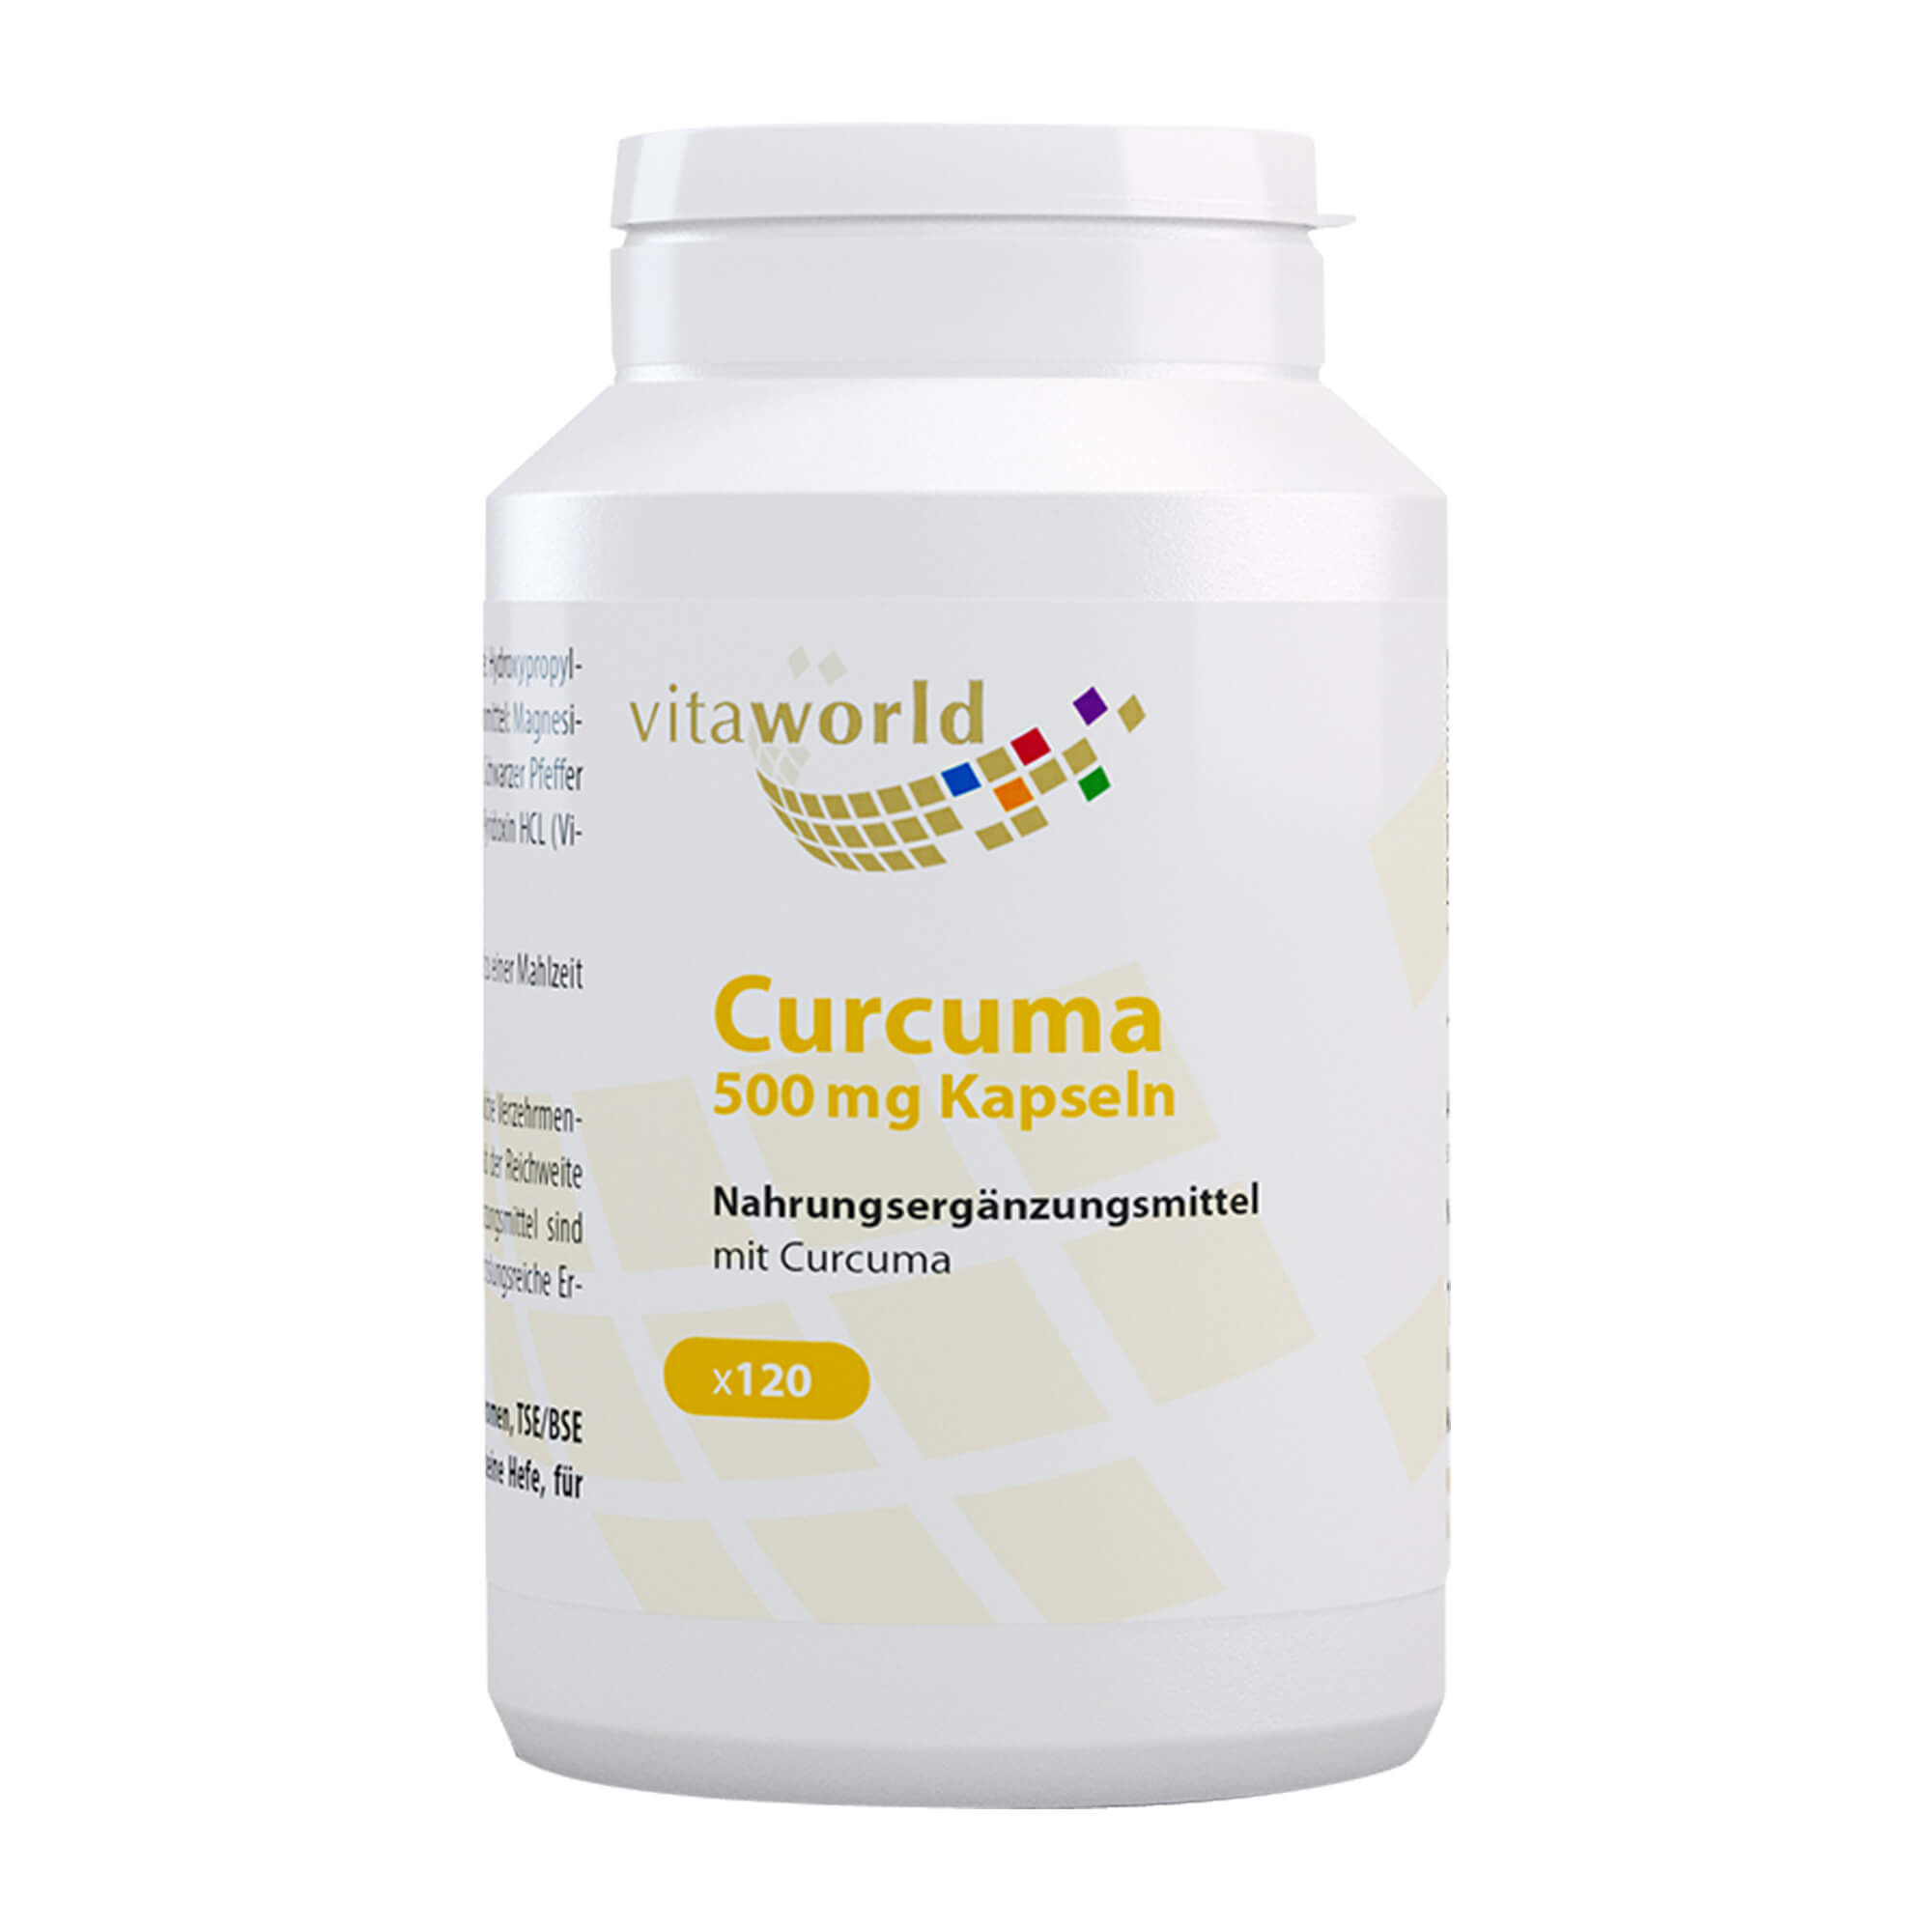 Nahrungsergänzungsmittel mit Curcuma.